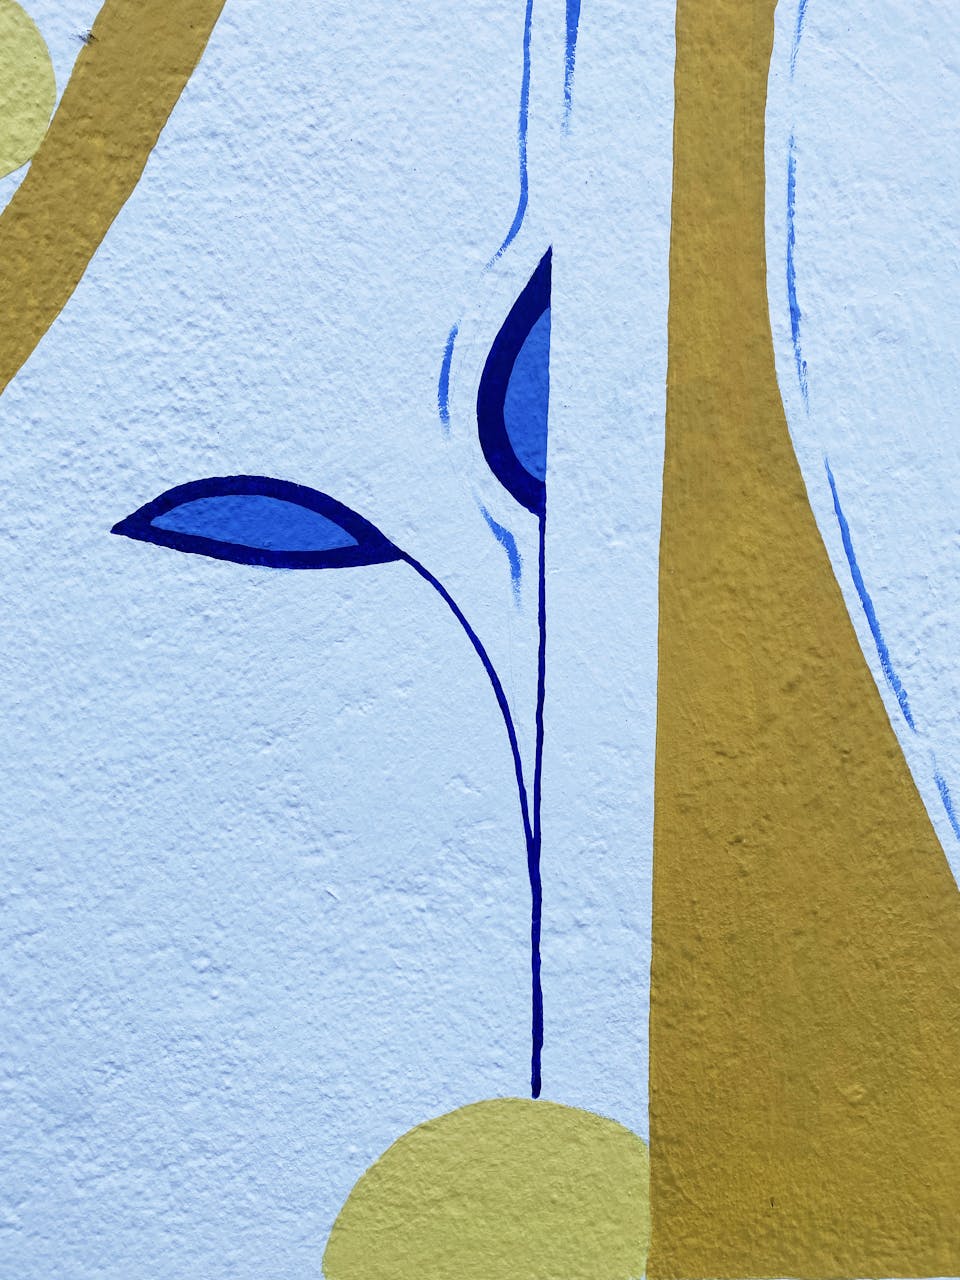 Détails de la fresque murale "Tisser du lien", illustrant une jeune pousse arrosée.